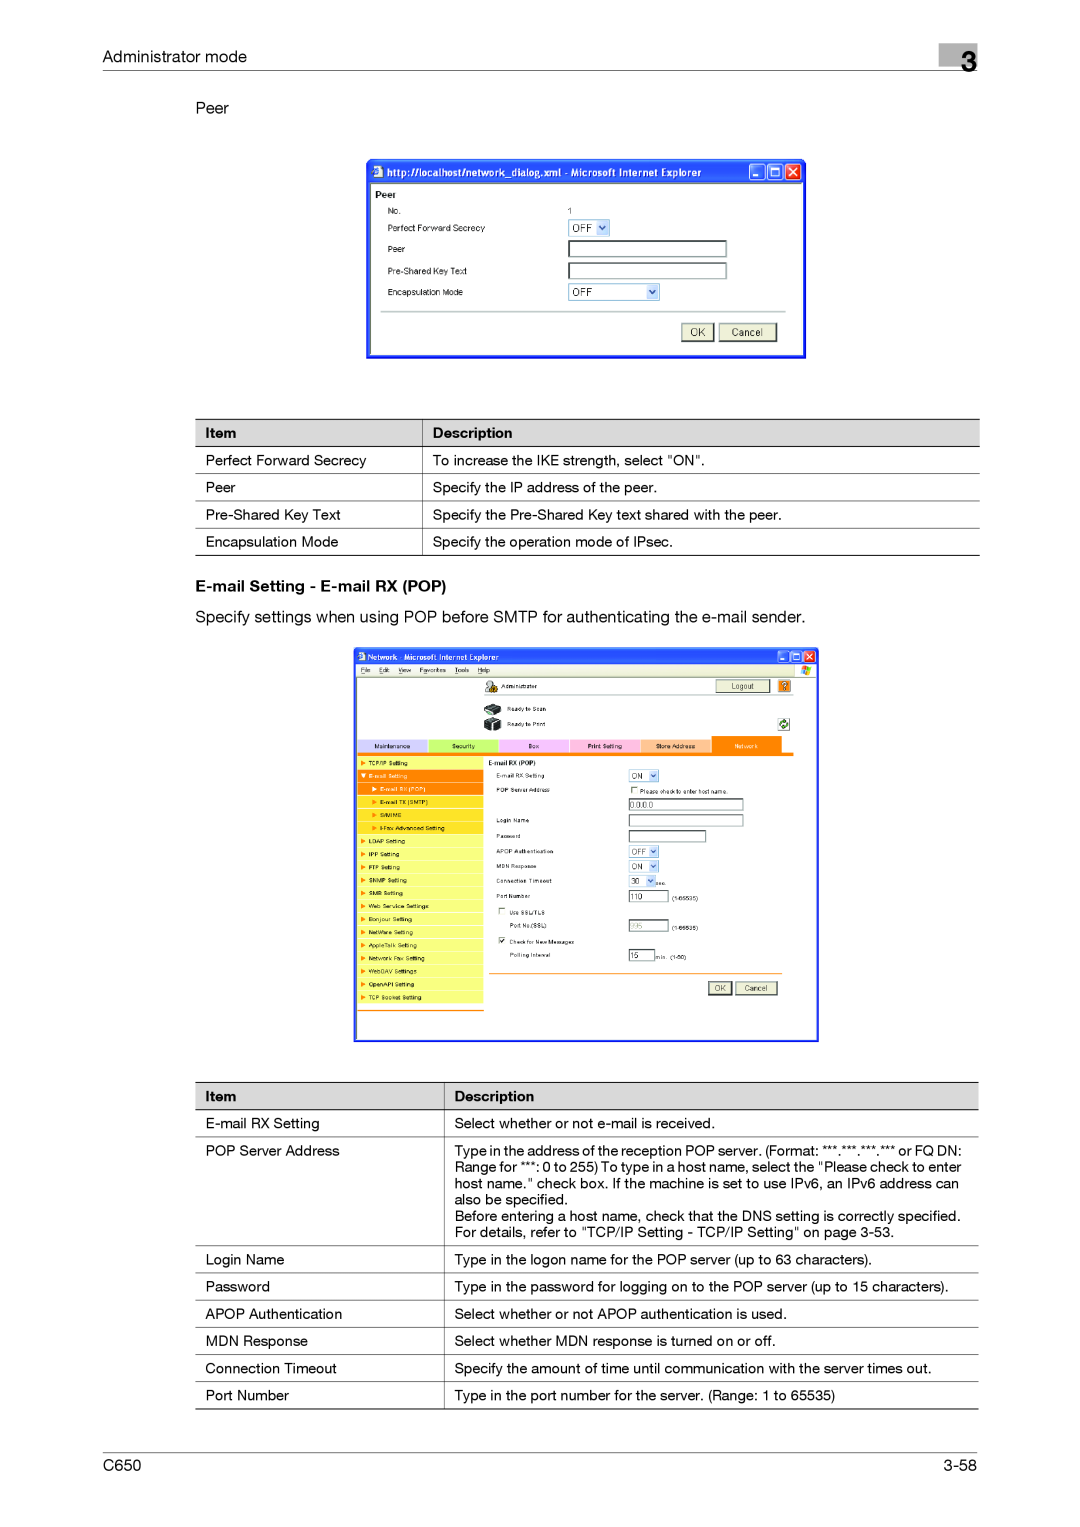 Konica Minolta C650 manual Administrator mode Peer, E-mailSetting - E-mailRX POP, 3-58 